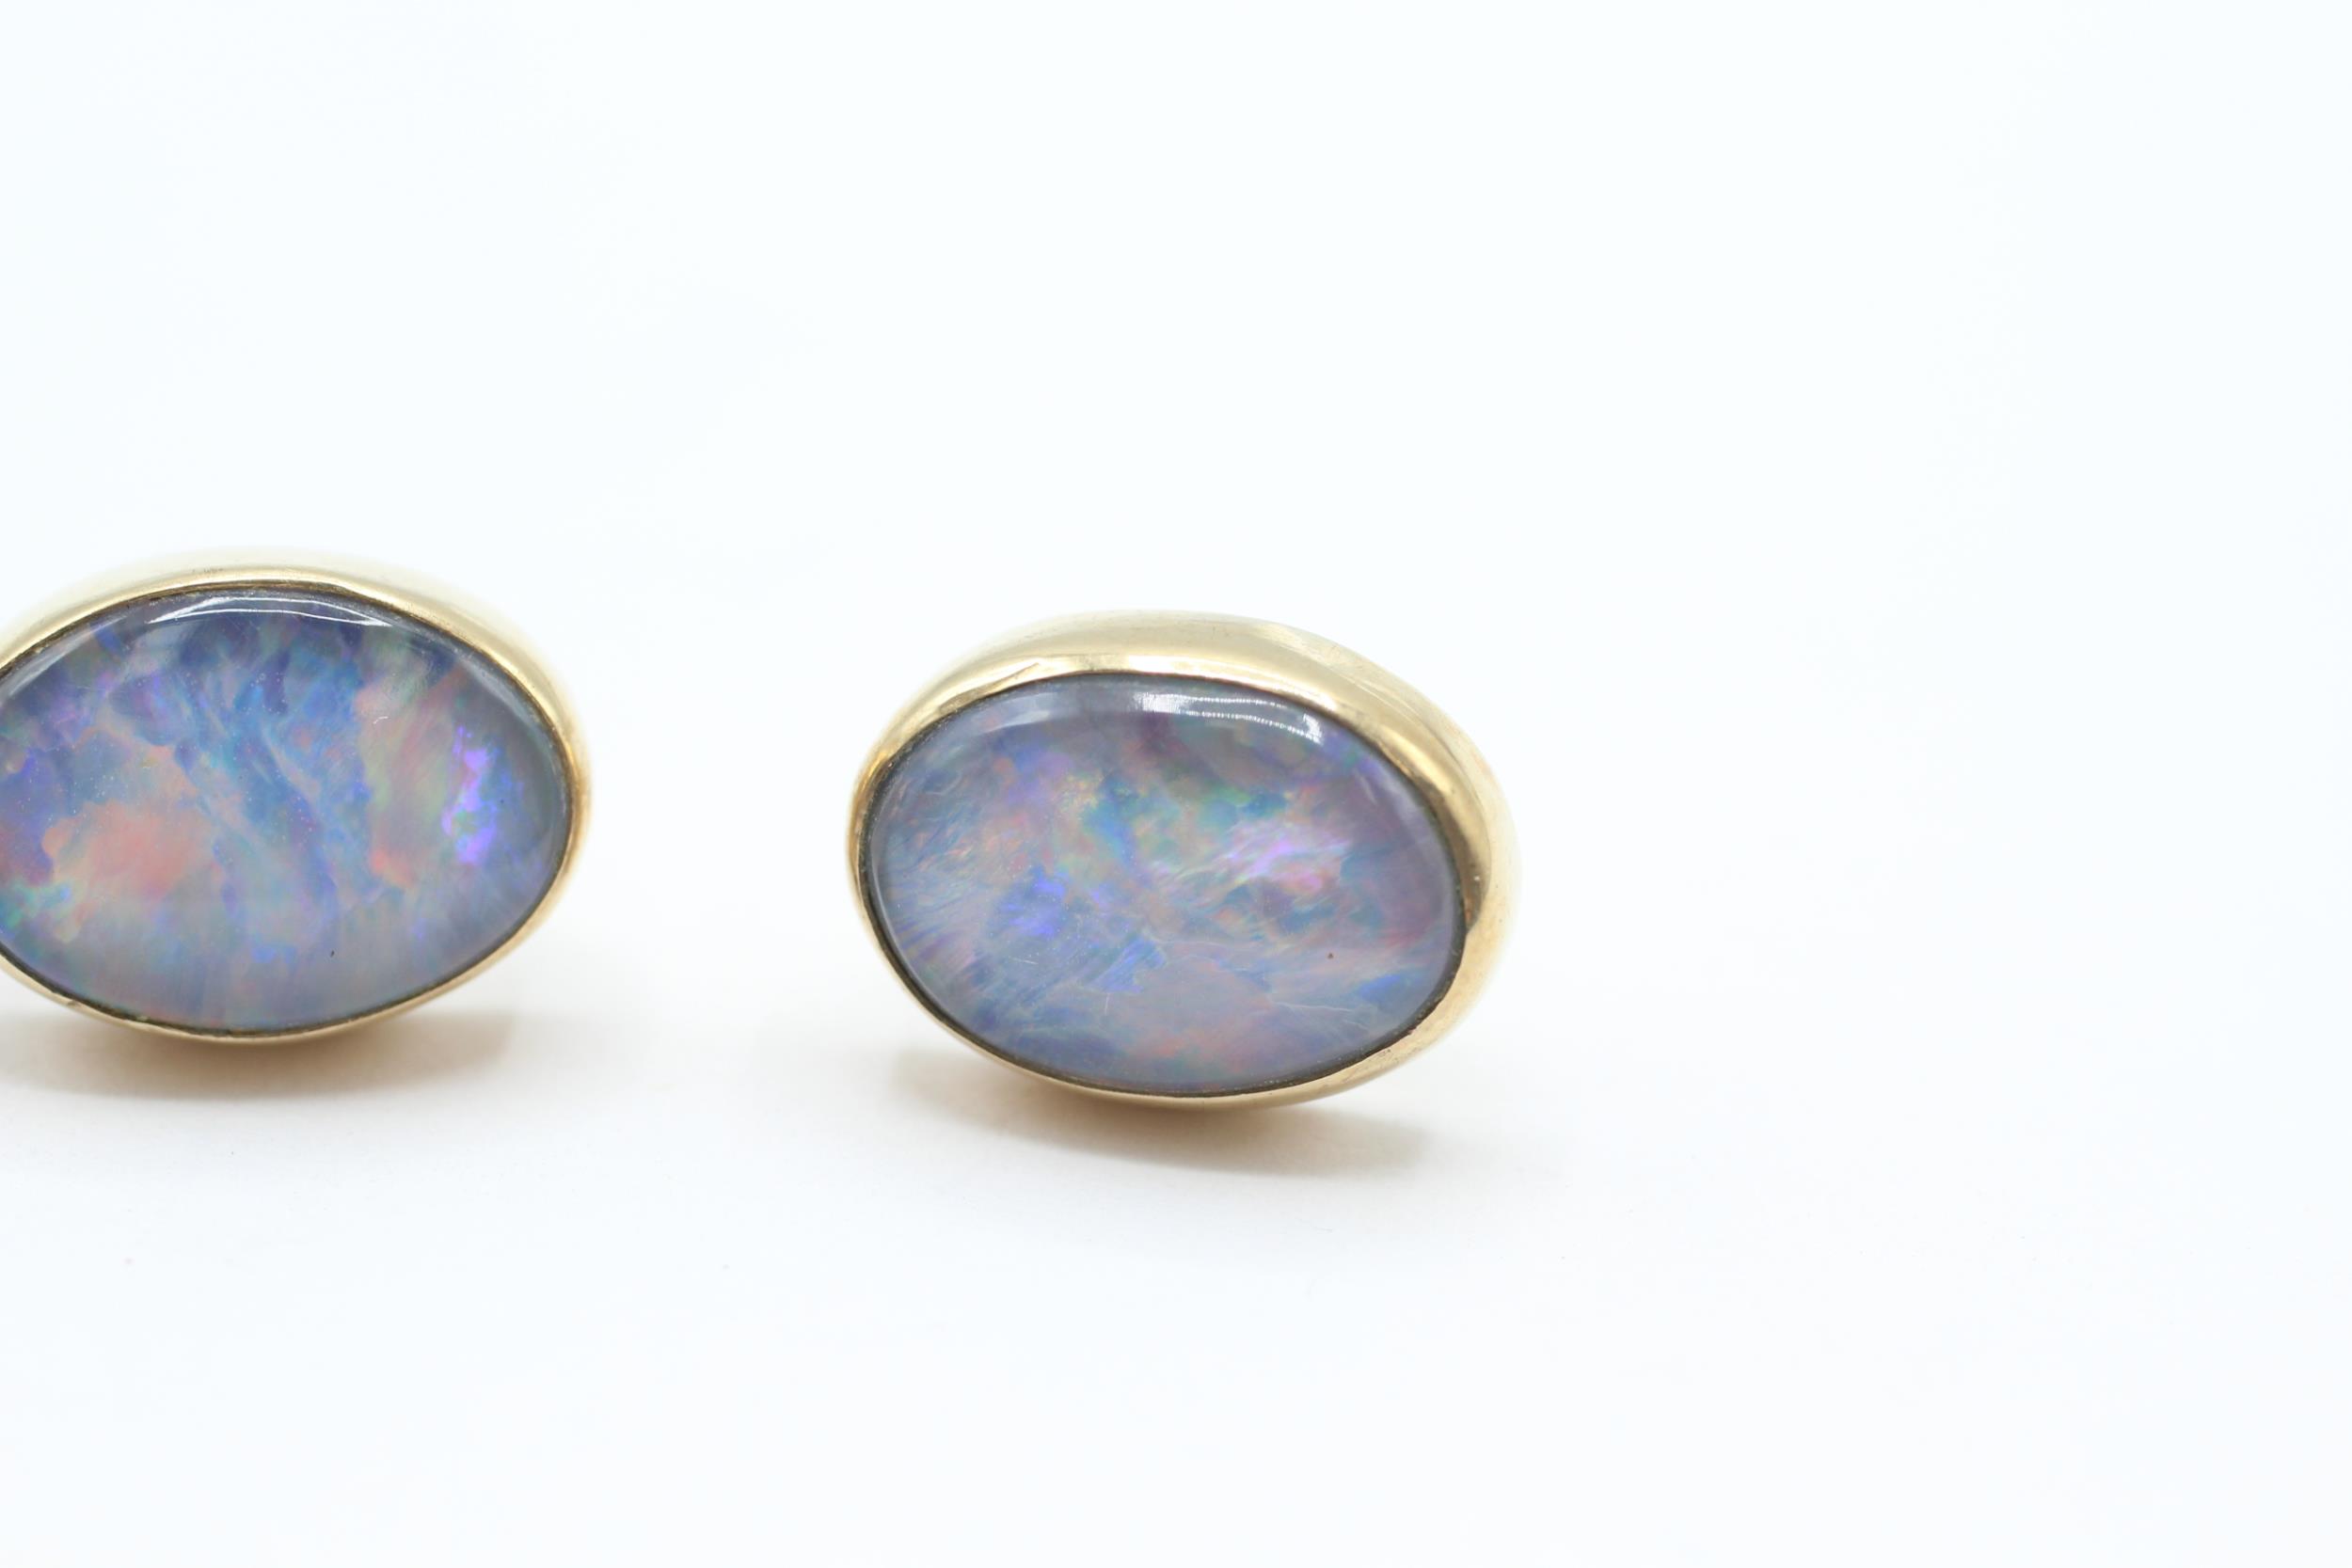 9ct gold black opal triplet stud earrings 4.1 g - Image 3 of 4